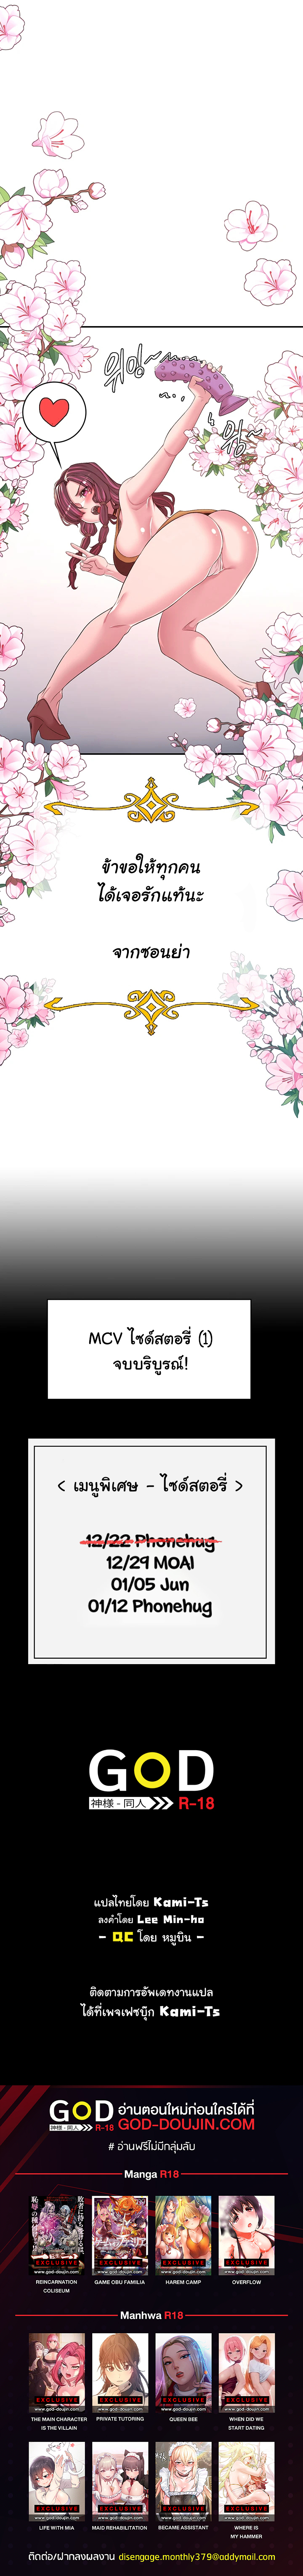 TMCITV50.6 06